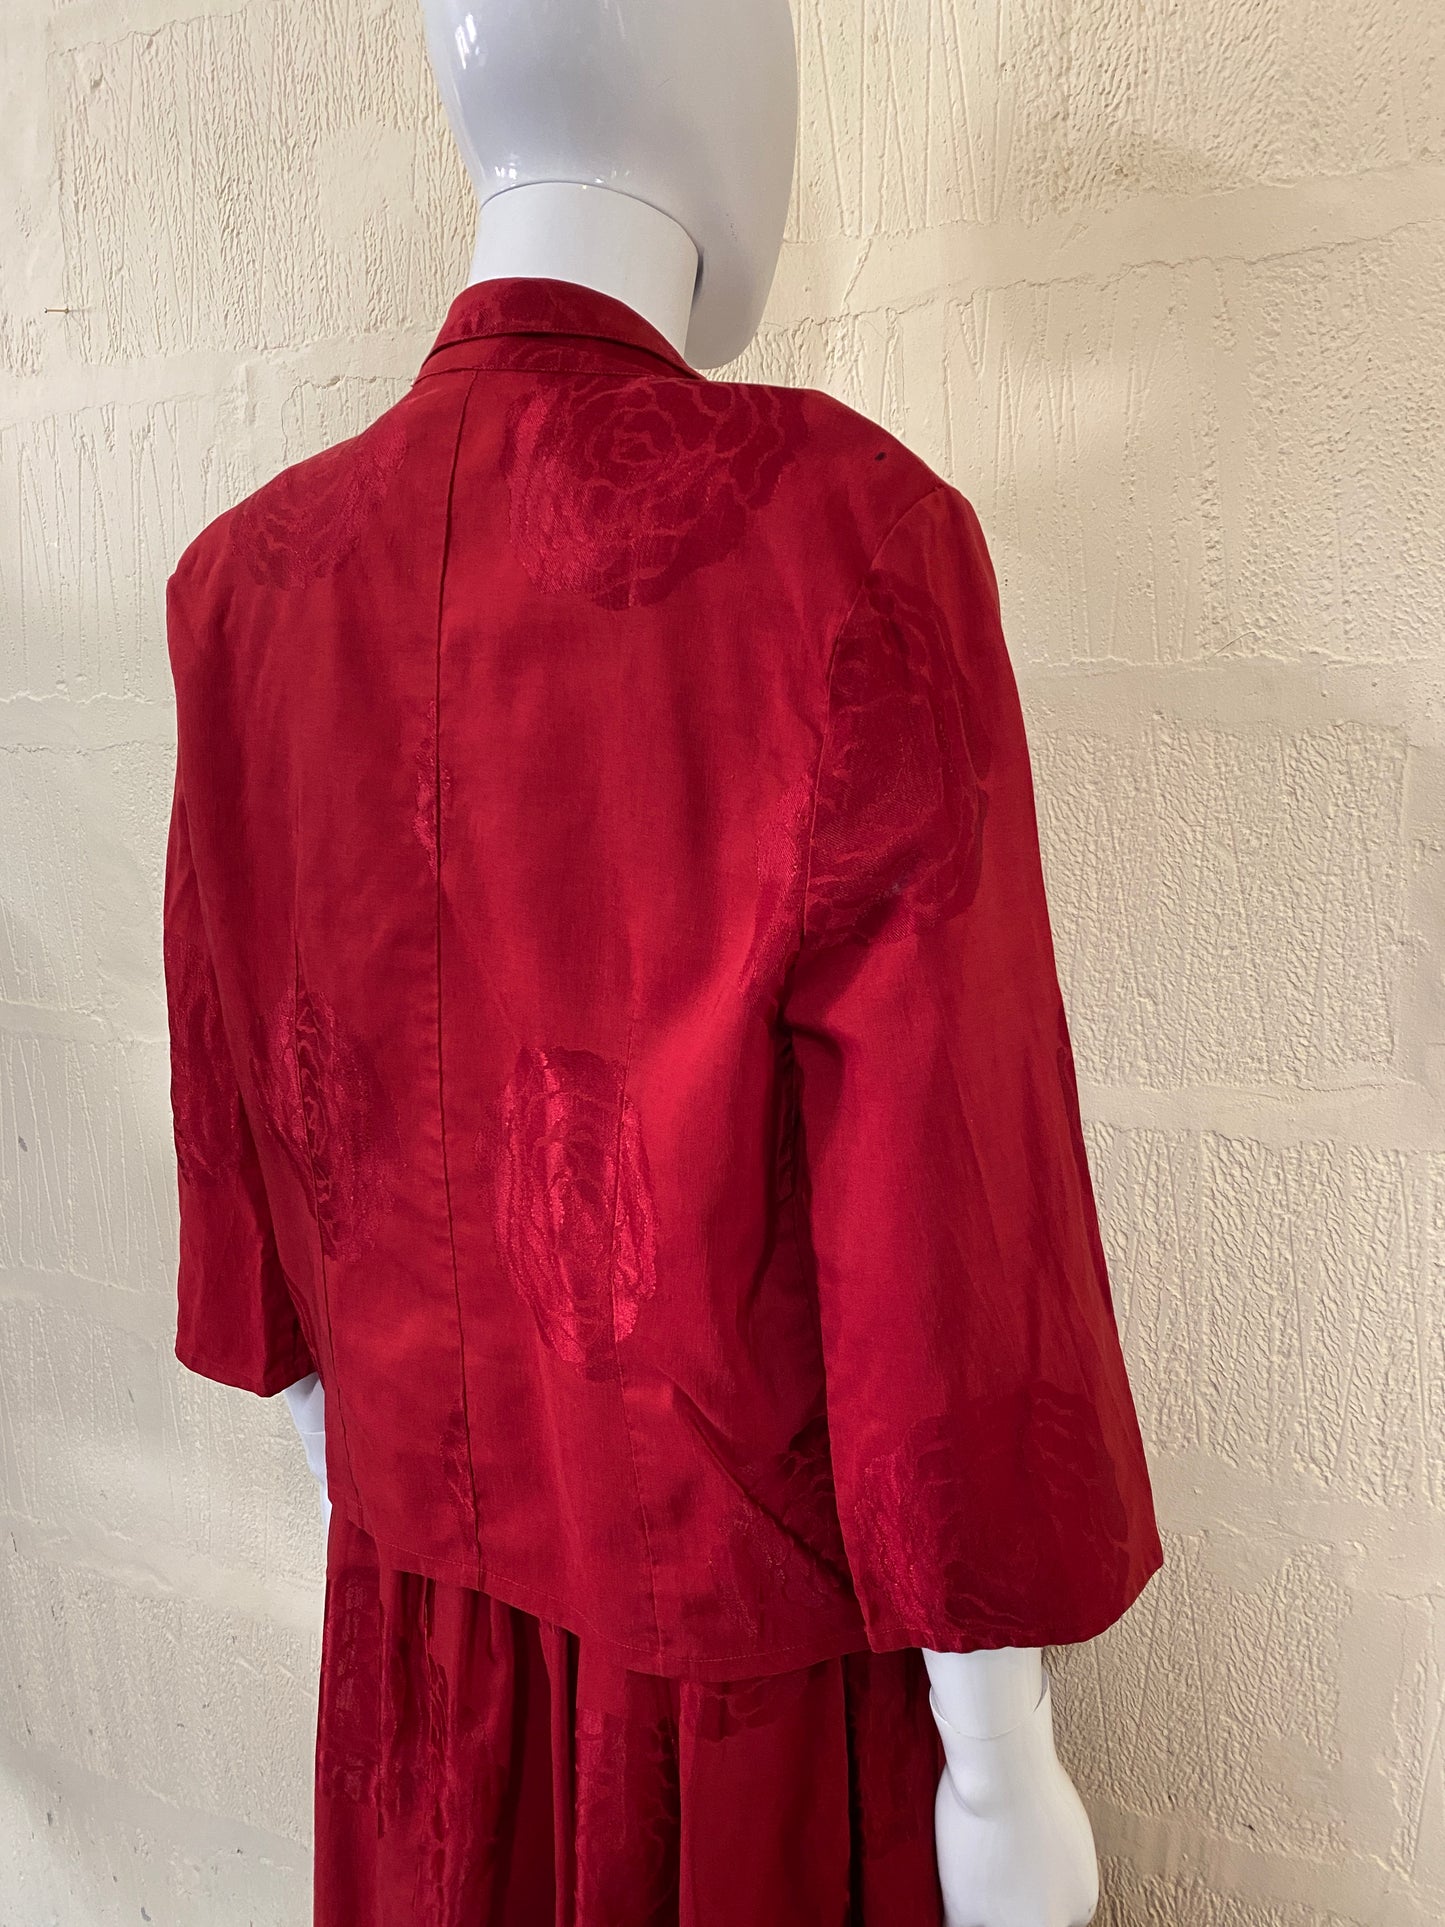 Vintage Red Lightweight Blazer Jacket Size 8